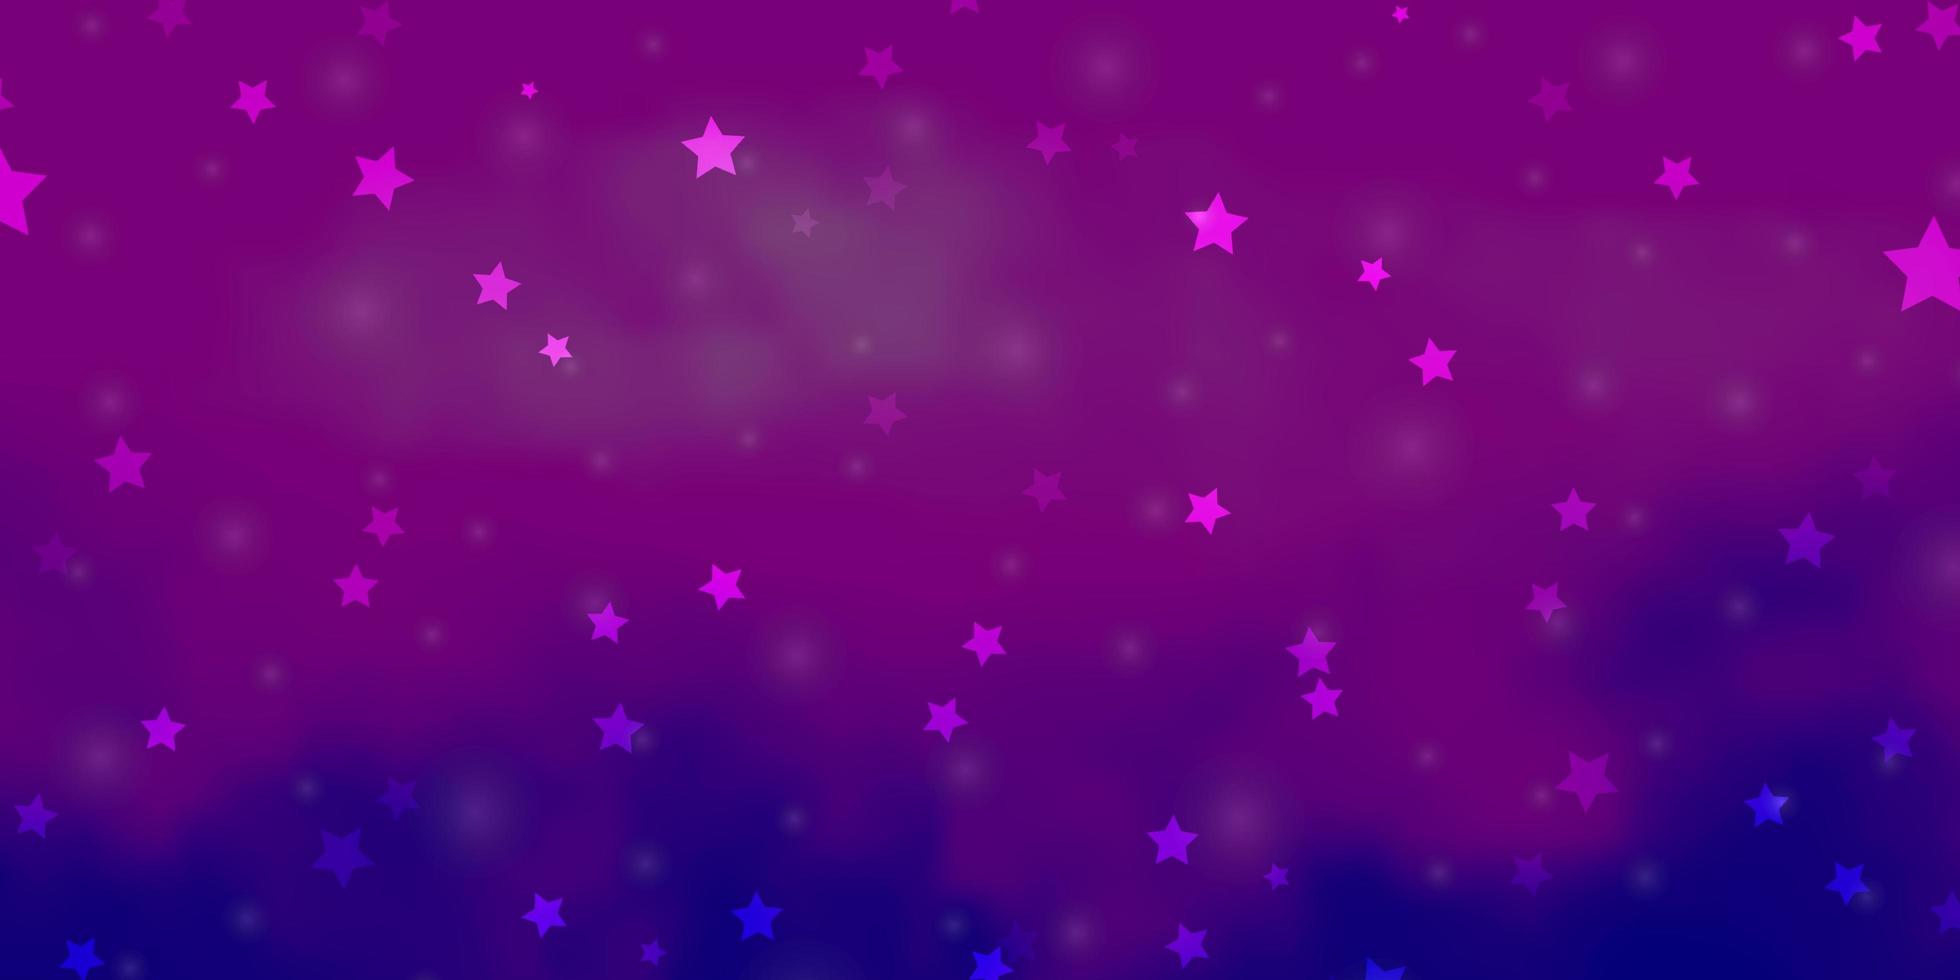 layout de vetor rosa claro, azul com estrelas brilhantes.